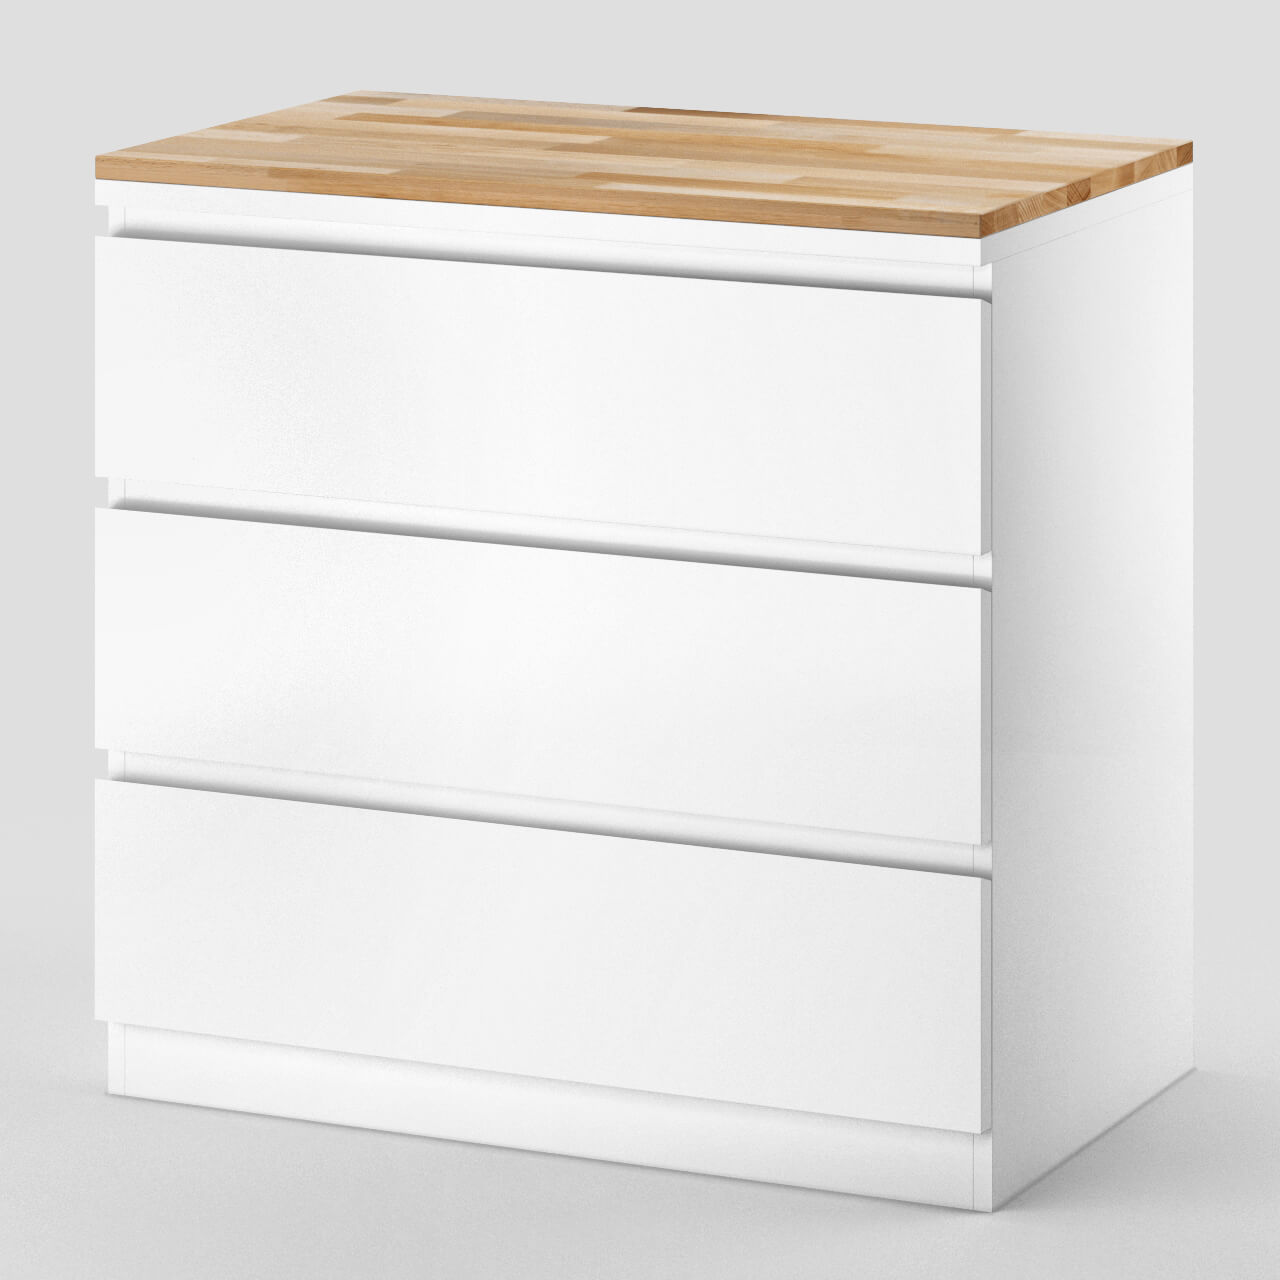 Seitenansicht Ikea Malm Kommode 3 Fächer mit Holzplatte aus Buche geölt als Abdeckplatte